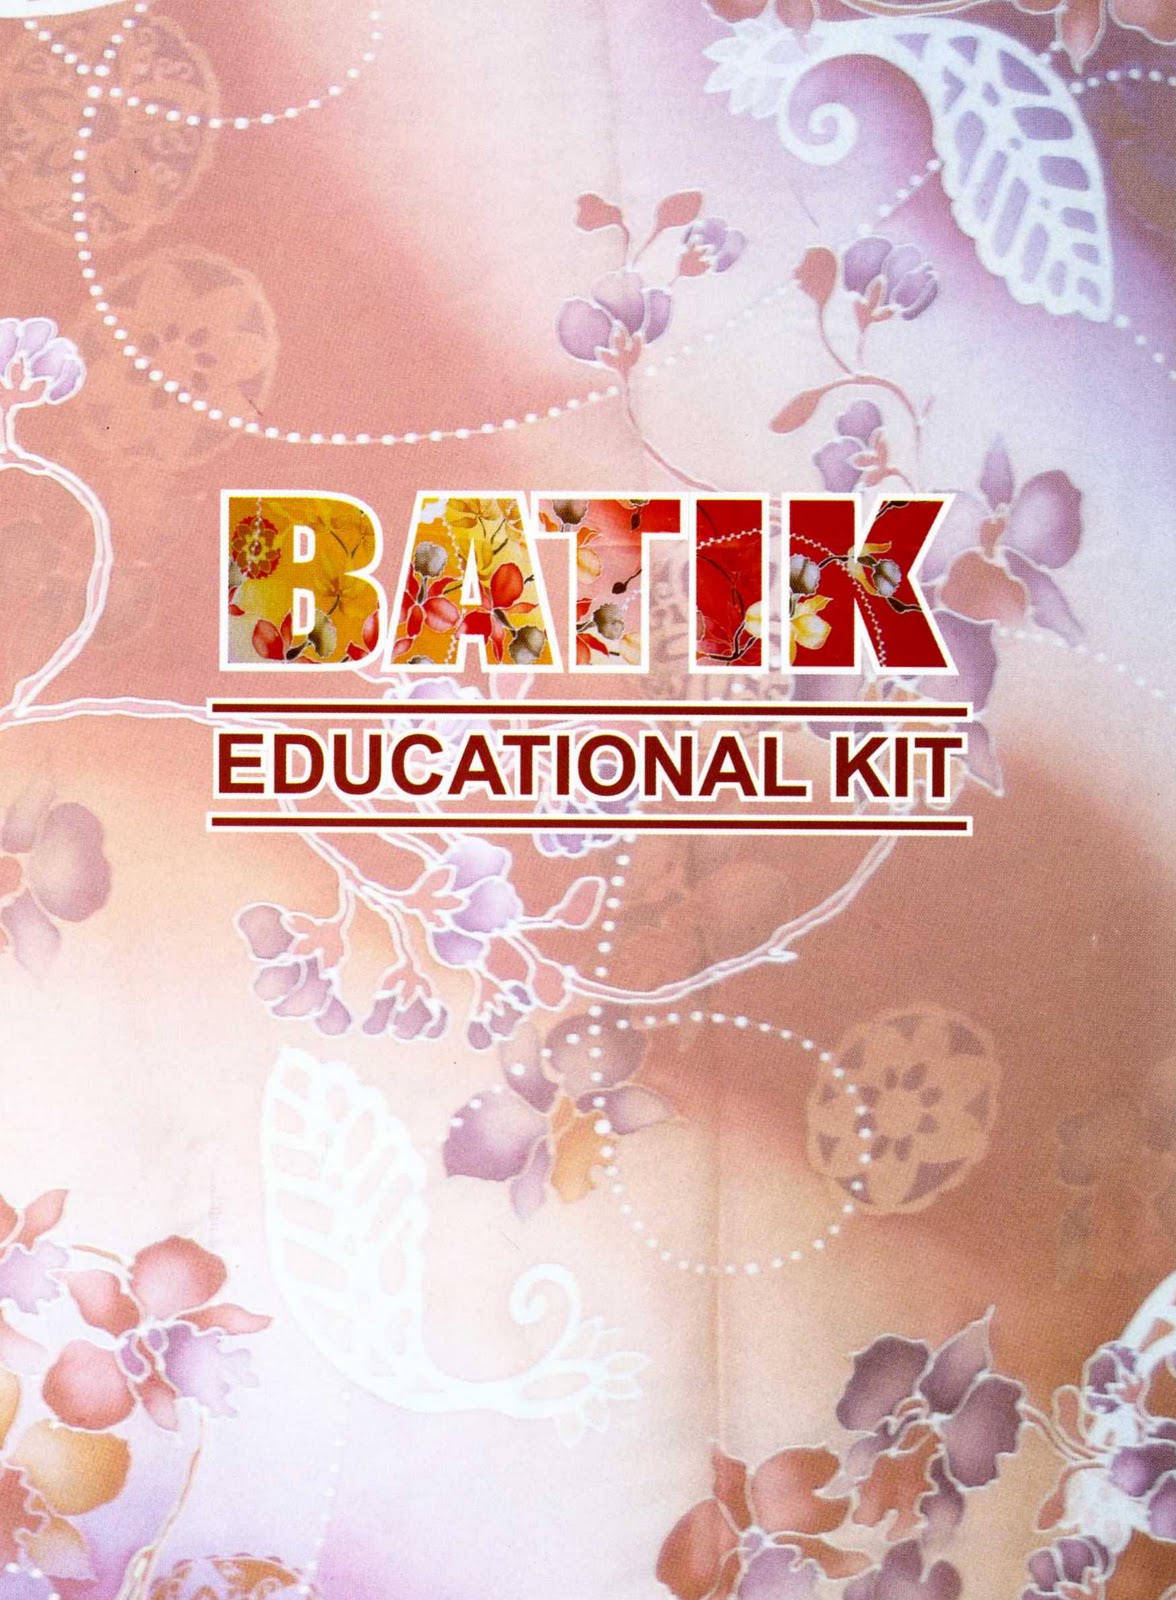 Informasi Kraf Malaysia: The Batik Canting